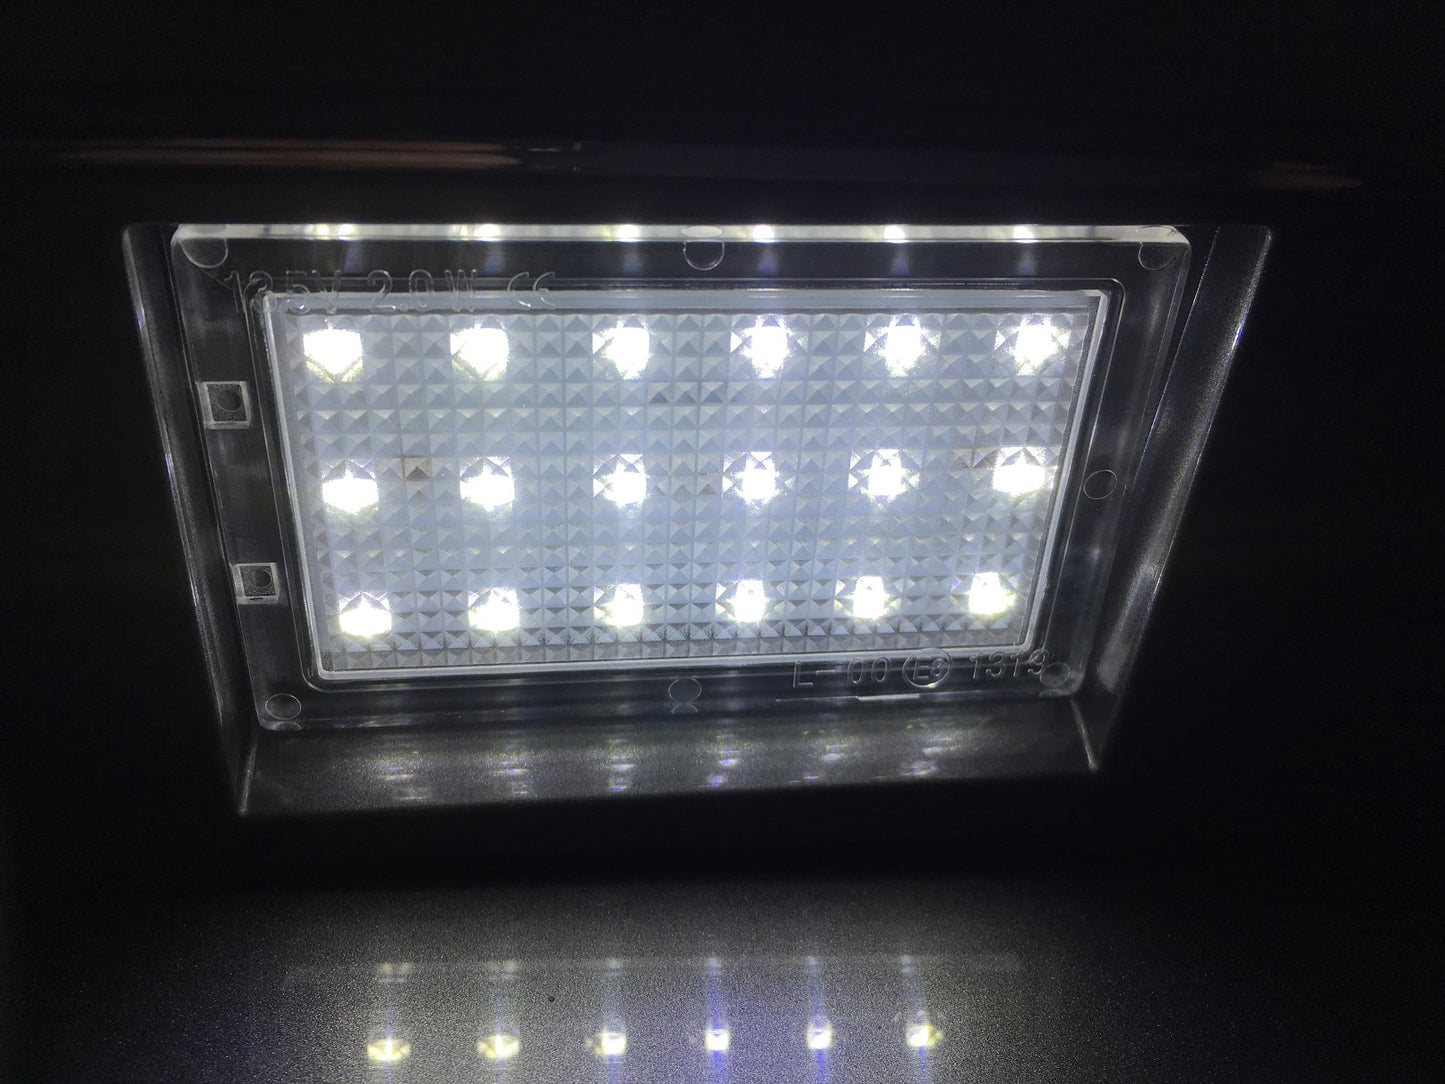 LED Rear Number plate light upgrade for Range Rover Sport L320